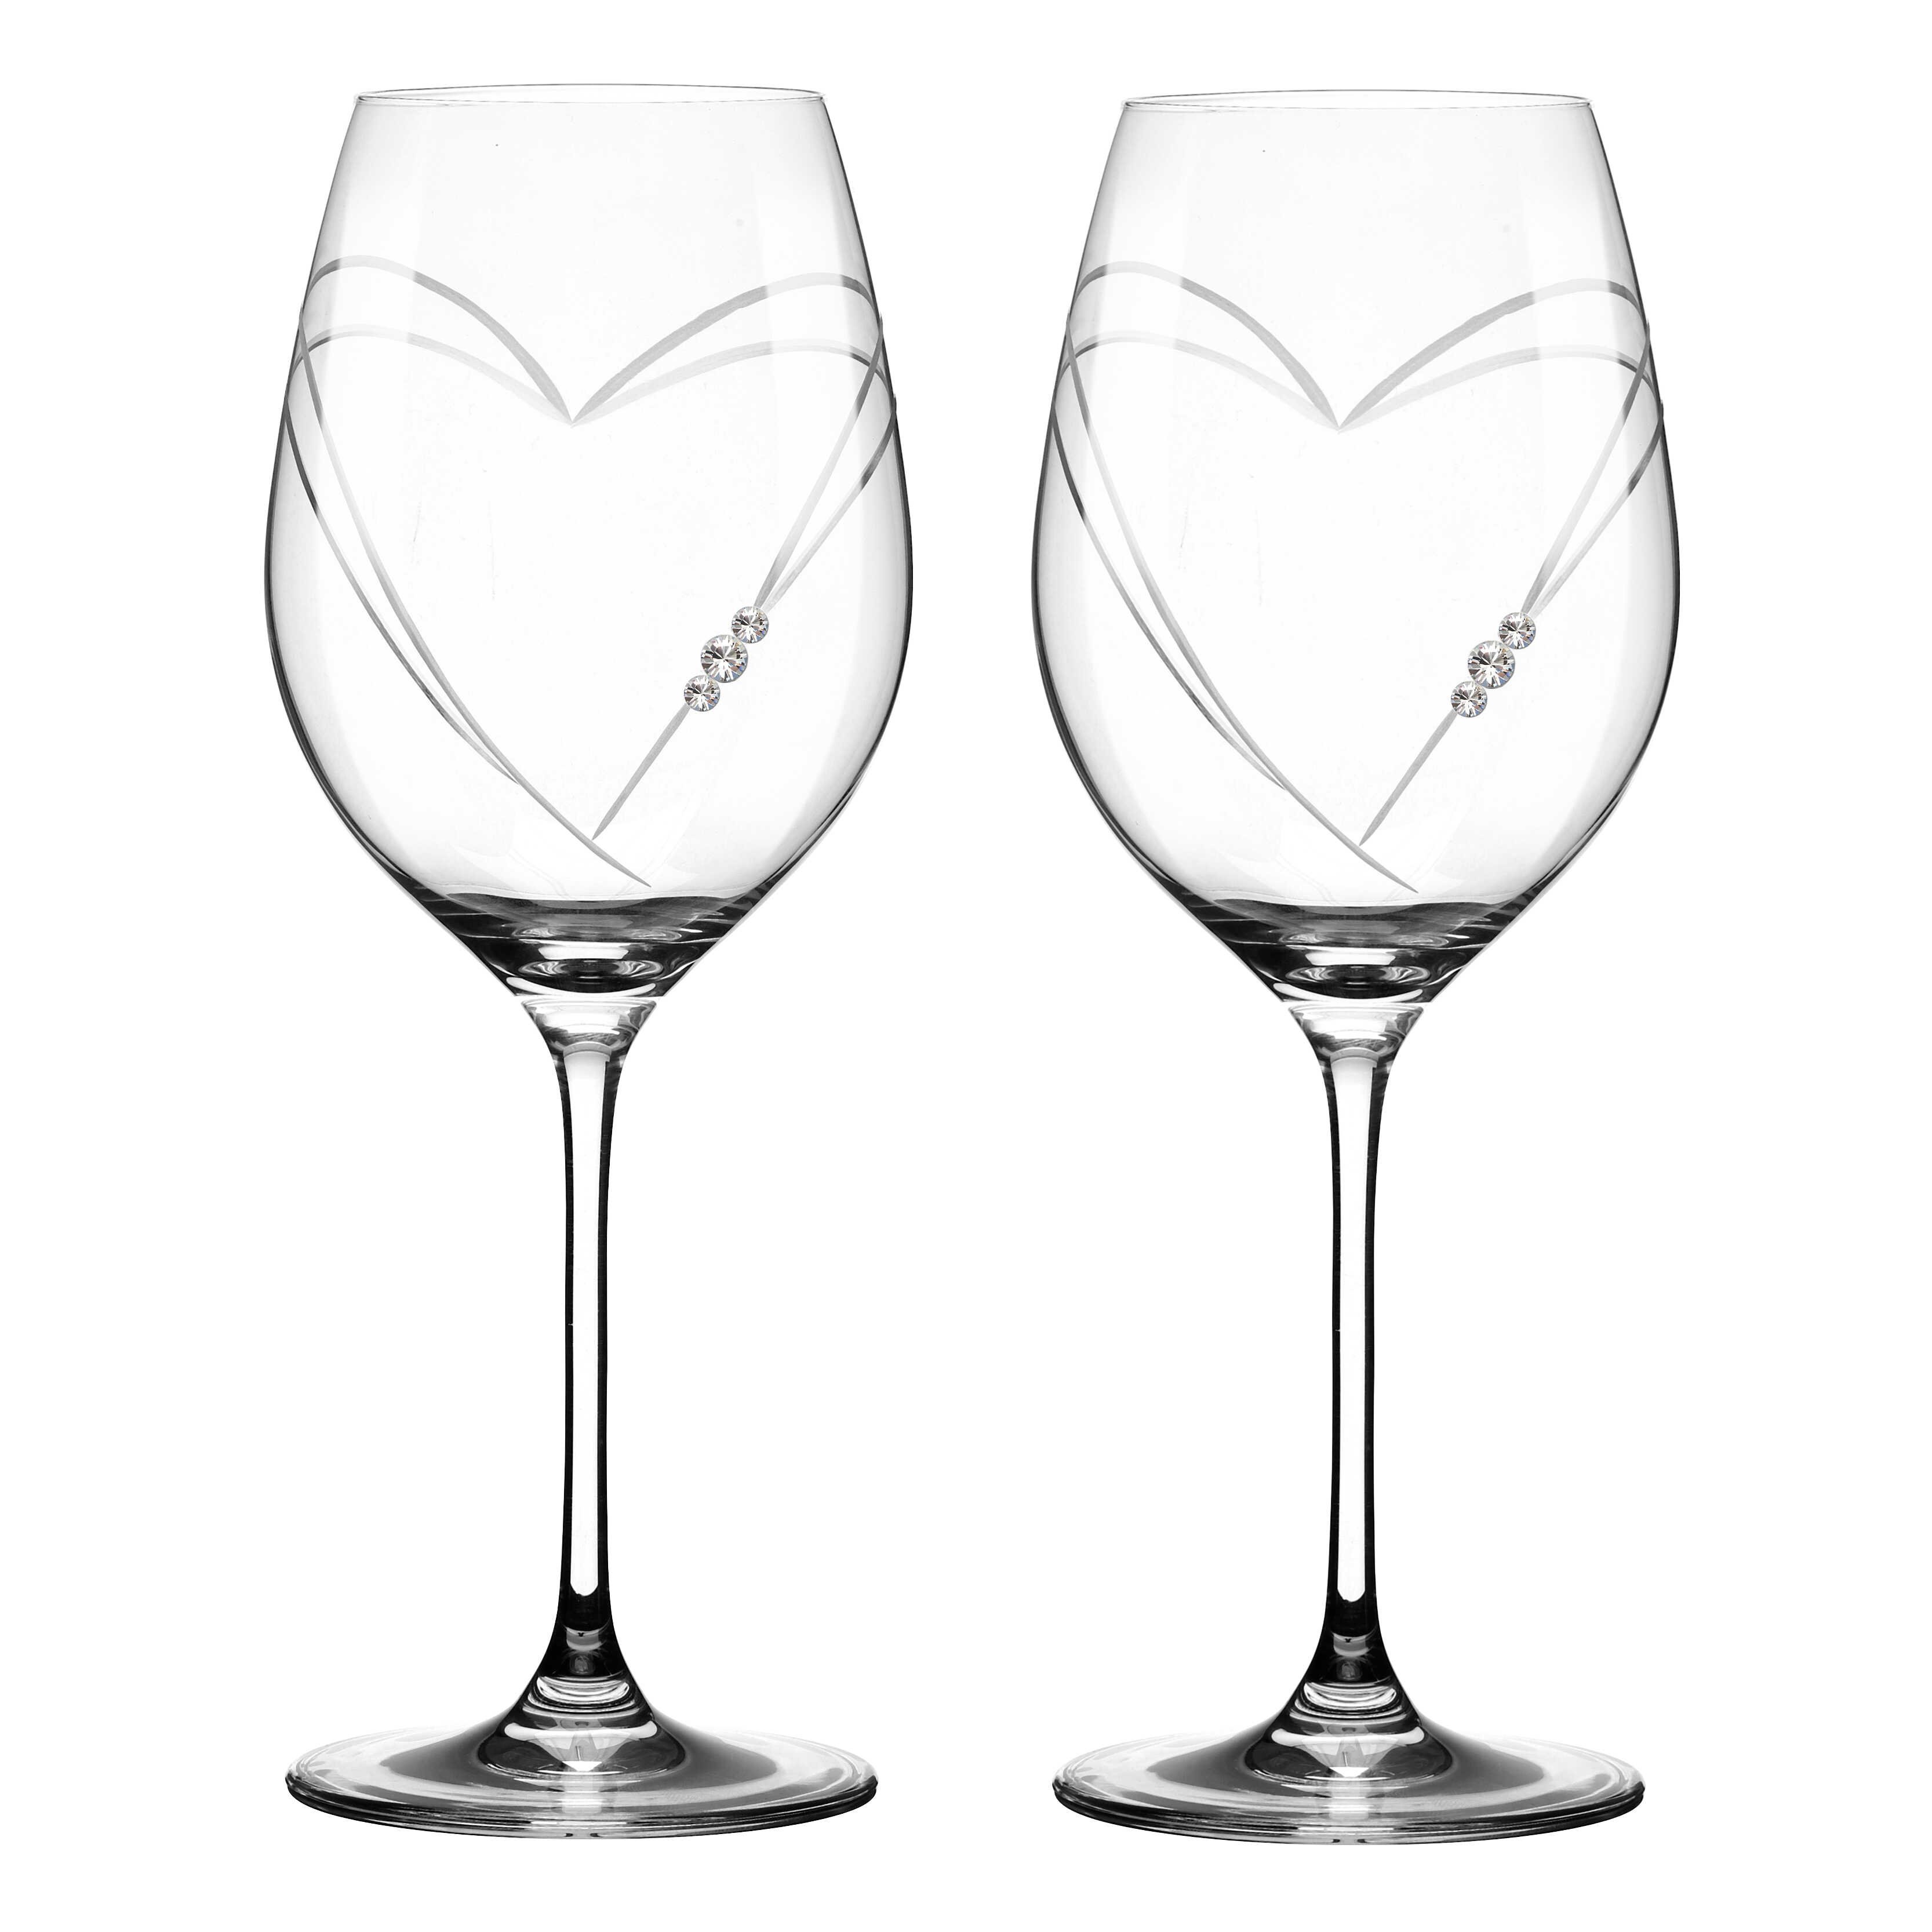 Two Hearts Rdvinsglas med Swarovski krystaller - 2 stk.